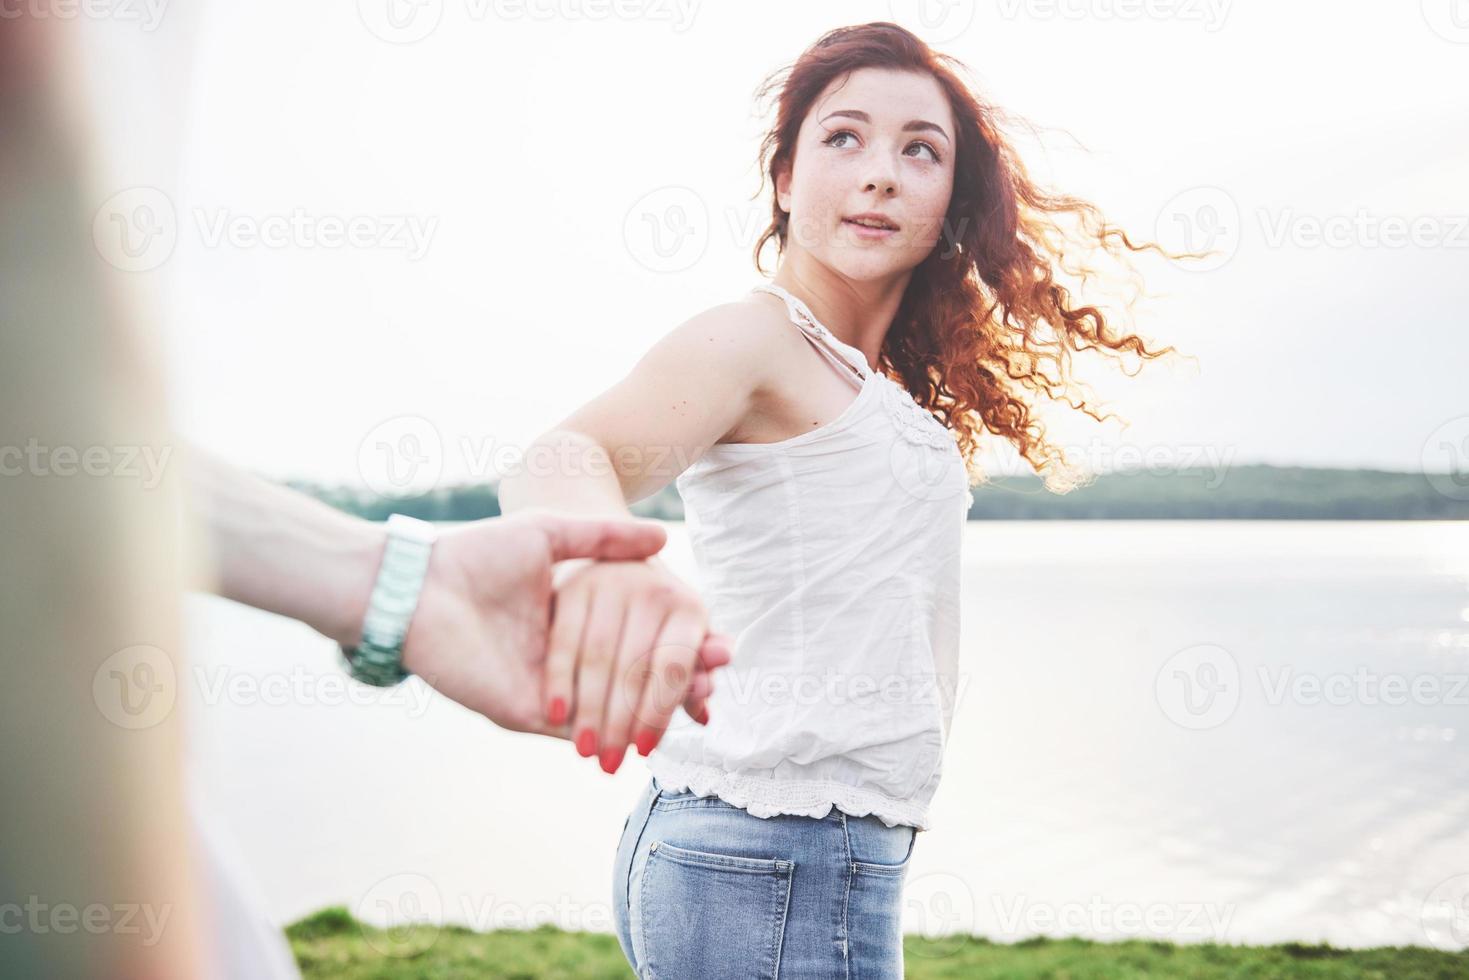 eine lächelnde glückliche frau mit einem verspielten ausdruck und einer hand mit ihrem mann. foto